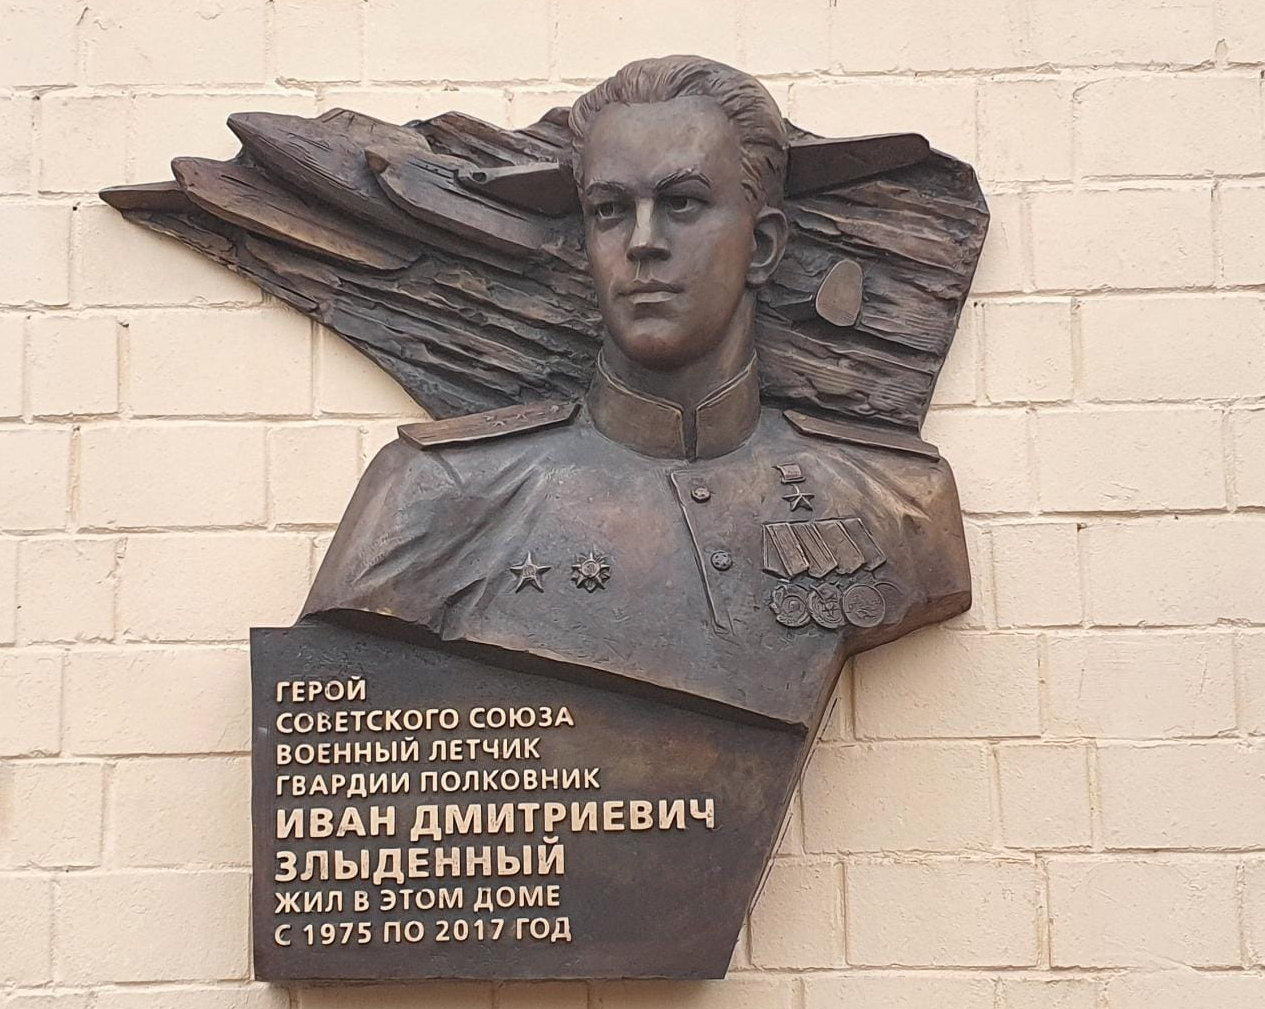 Мемориальную доску установили советскому летчику на Ленинском проспекте